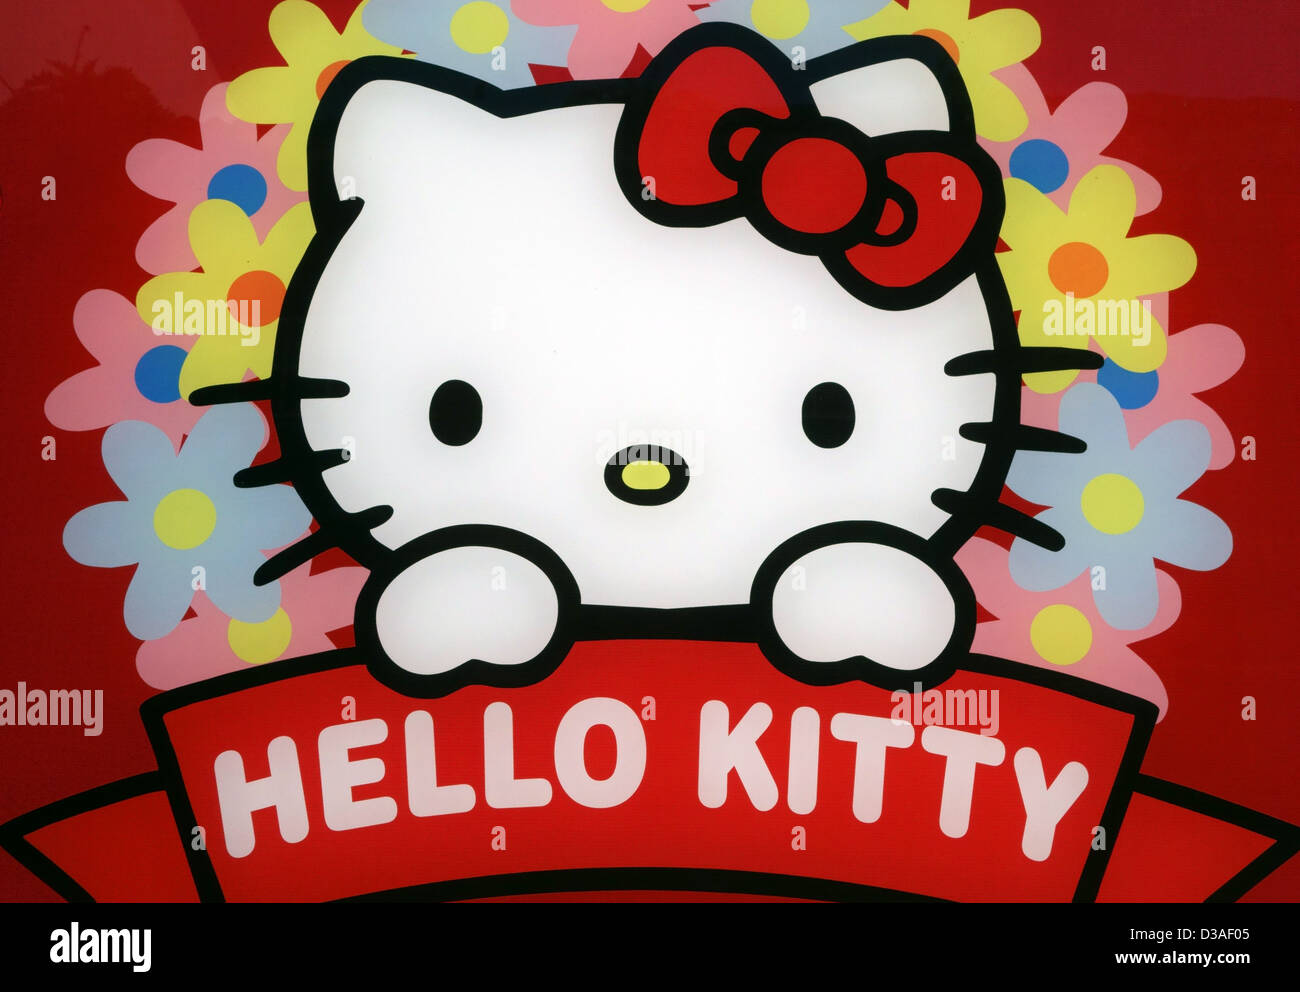 Hello Kitty Holding Heart T-Shirt